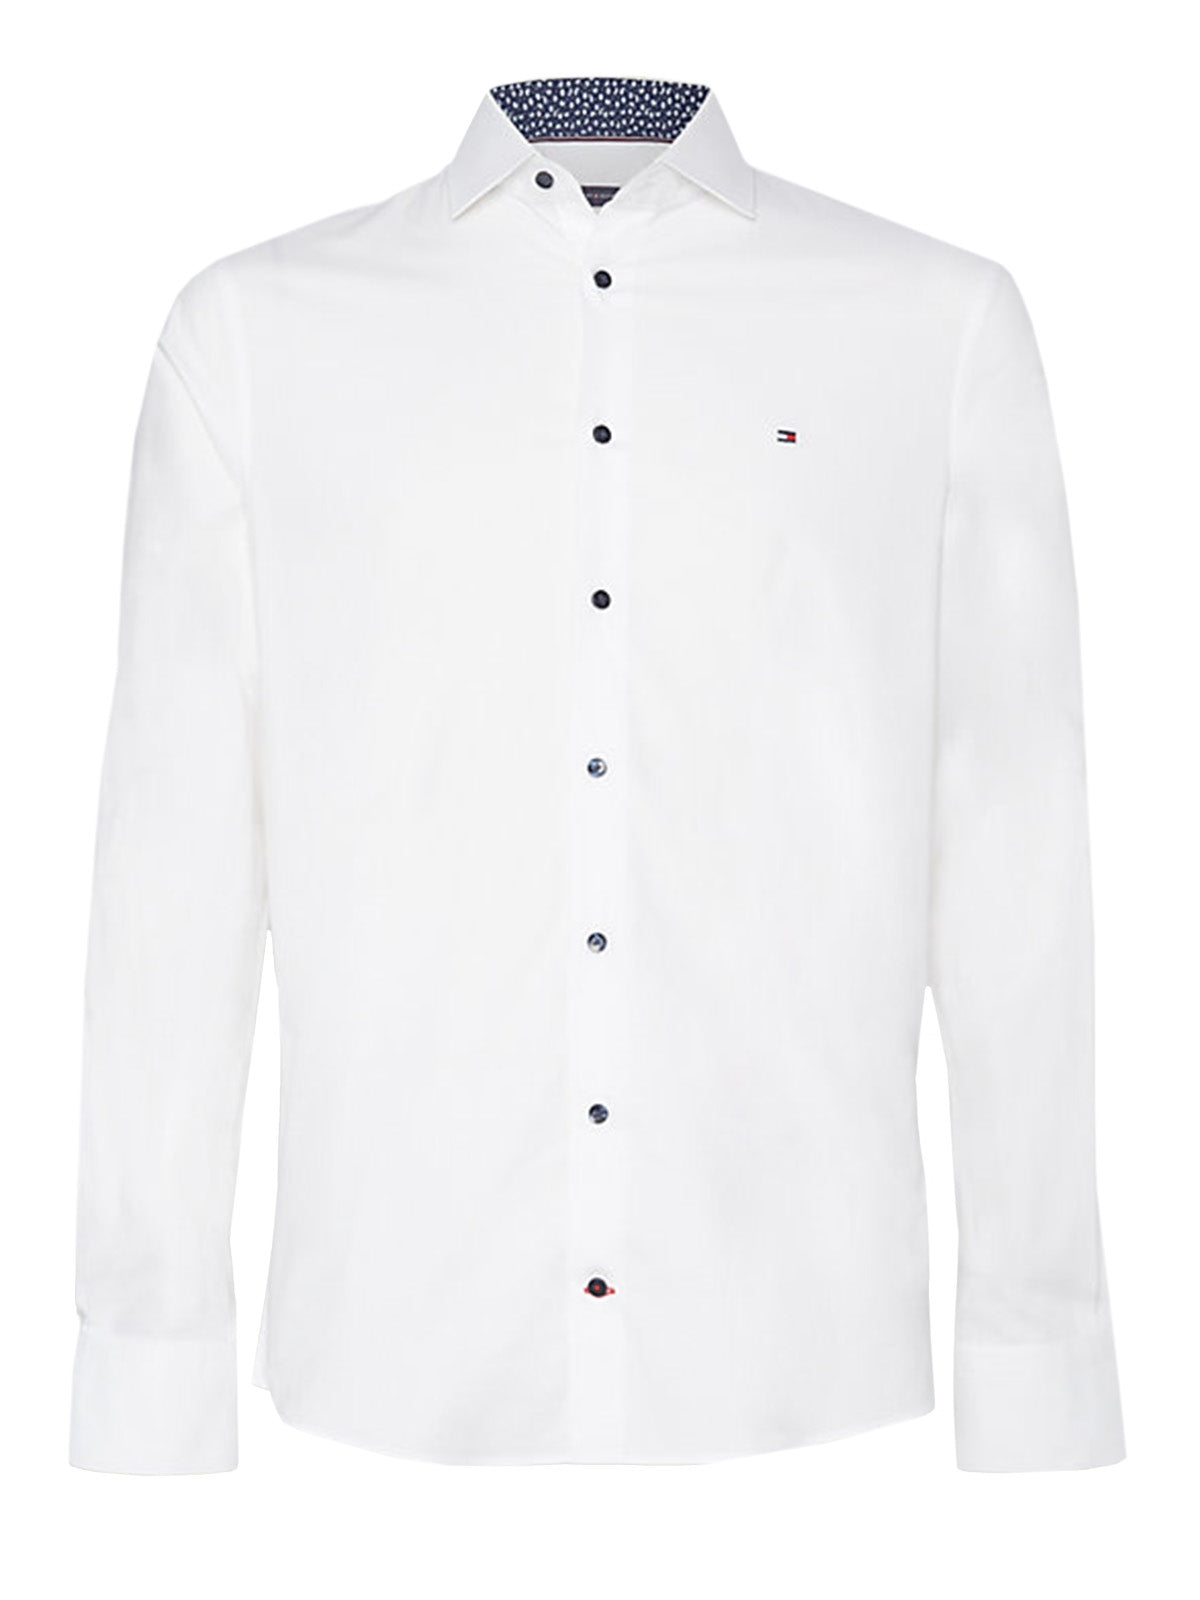 Camicie casual Uomo Tommy Hilfiger - Camicia Slim Fit In Popeline Con Bandierina - Bianco